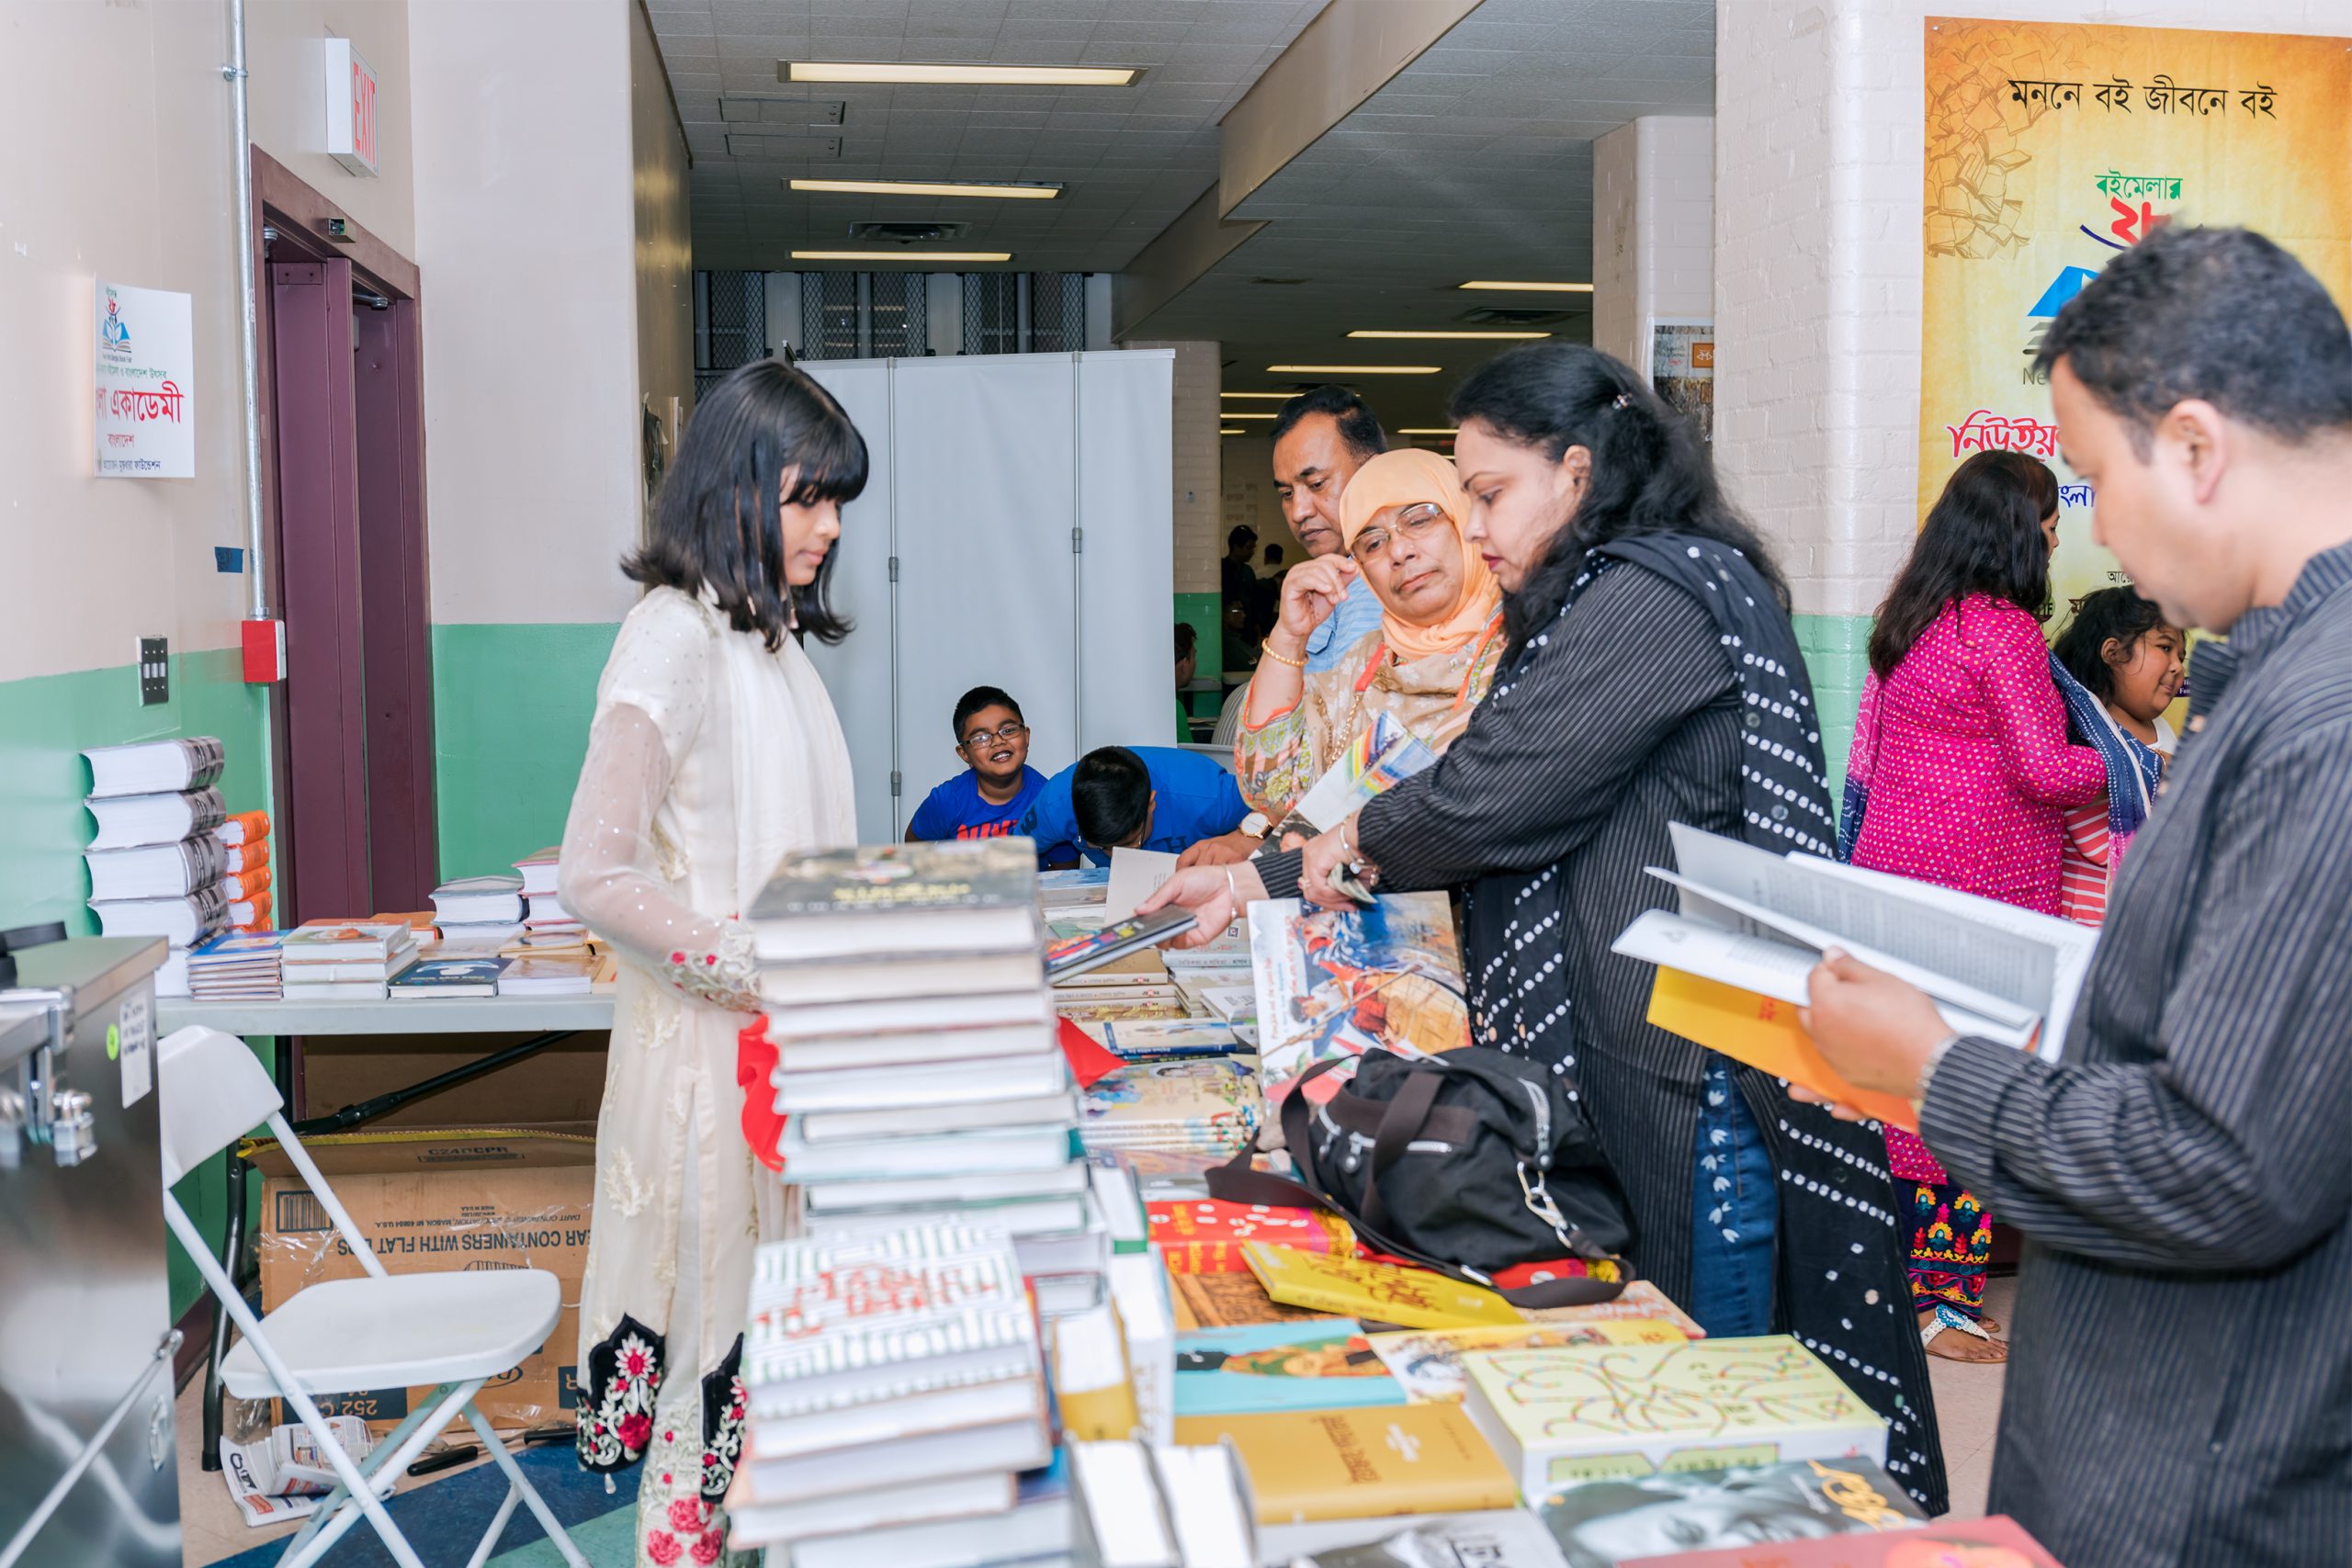 Bangla Academy Book Stall at the New York Bangla Boimela 2019